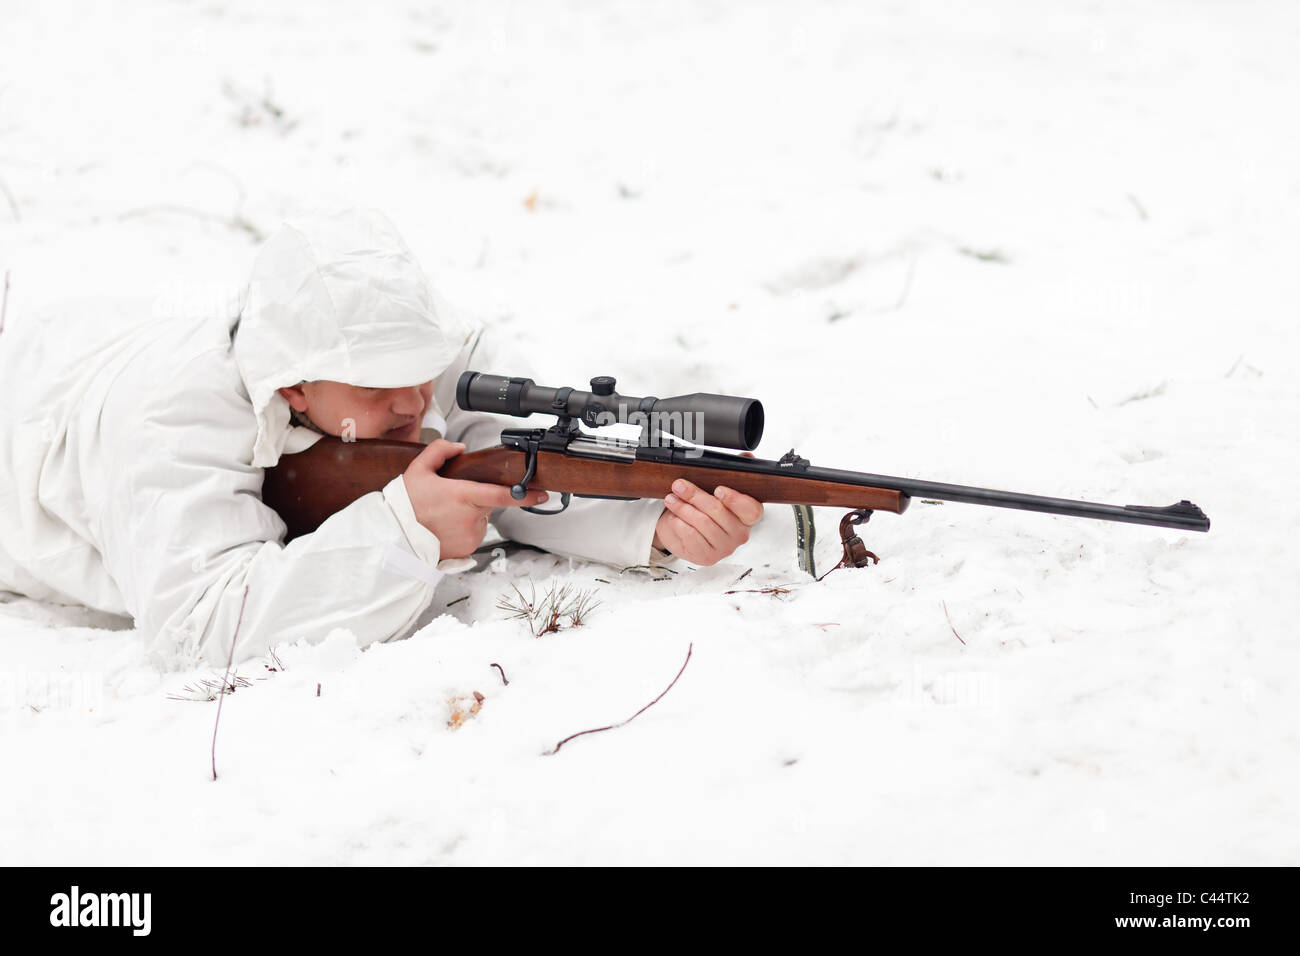 Sniper in bianco camouflage puntando sulla neve. Foto Stock